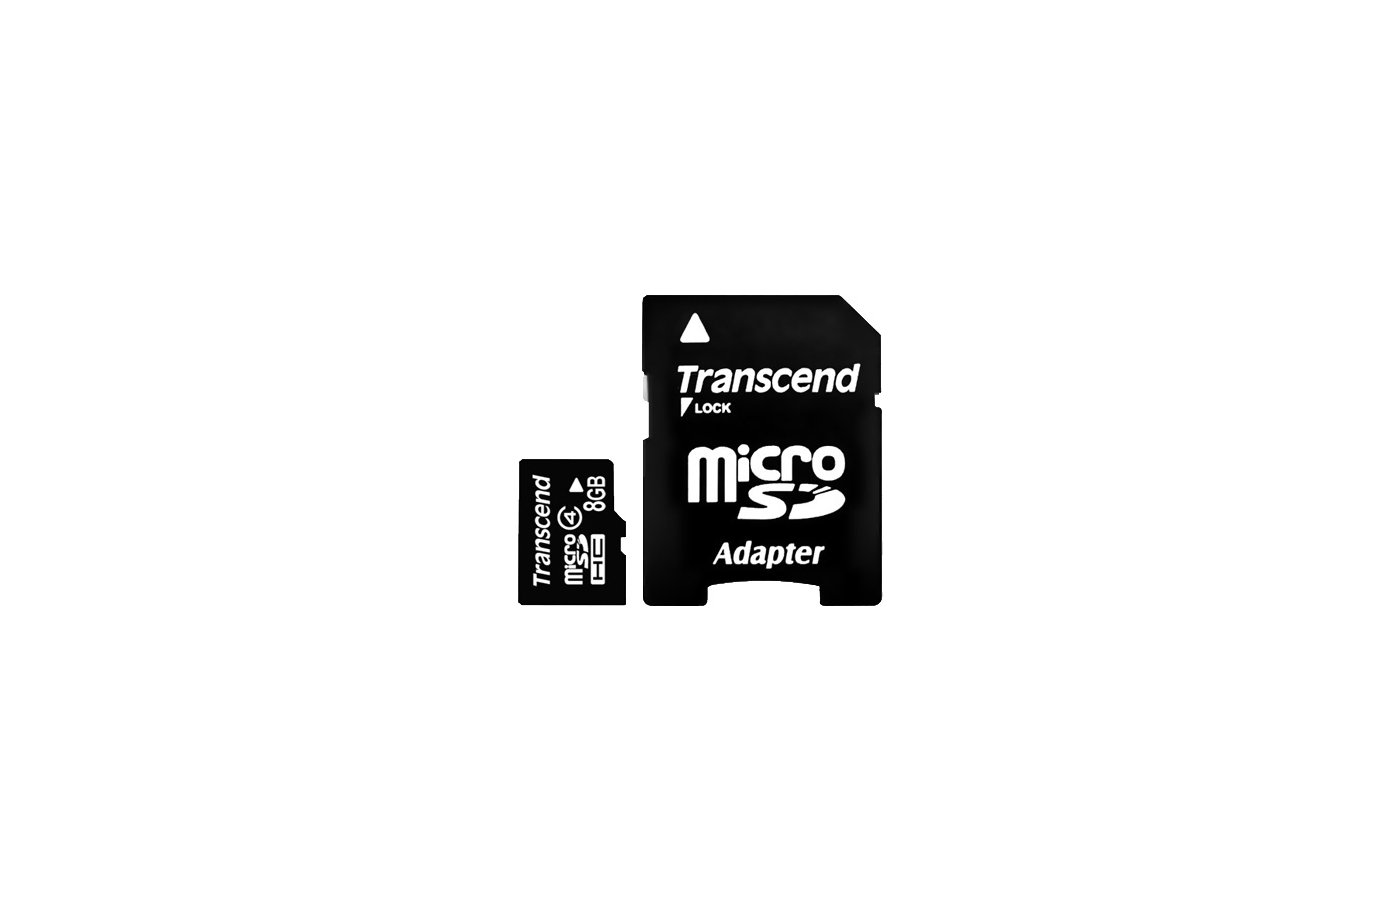 Карты памяти microsdhc transcend. Карта памяти MICROSDHC 16 ГБ class 10 Transcend. Карта памяти MICROSDHC 8 GB. Микро карта памяти MICROSDHC 4 GB. Память Transcend (MICROSDHC) 8gb + адаптер.